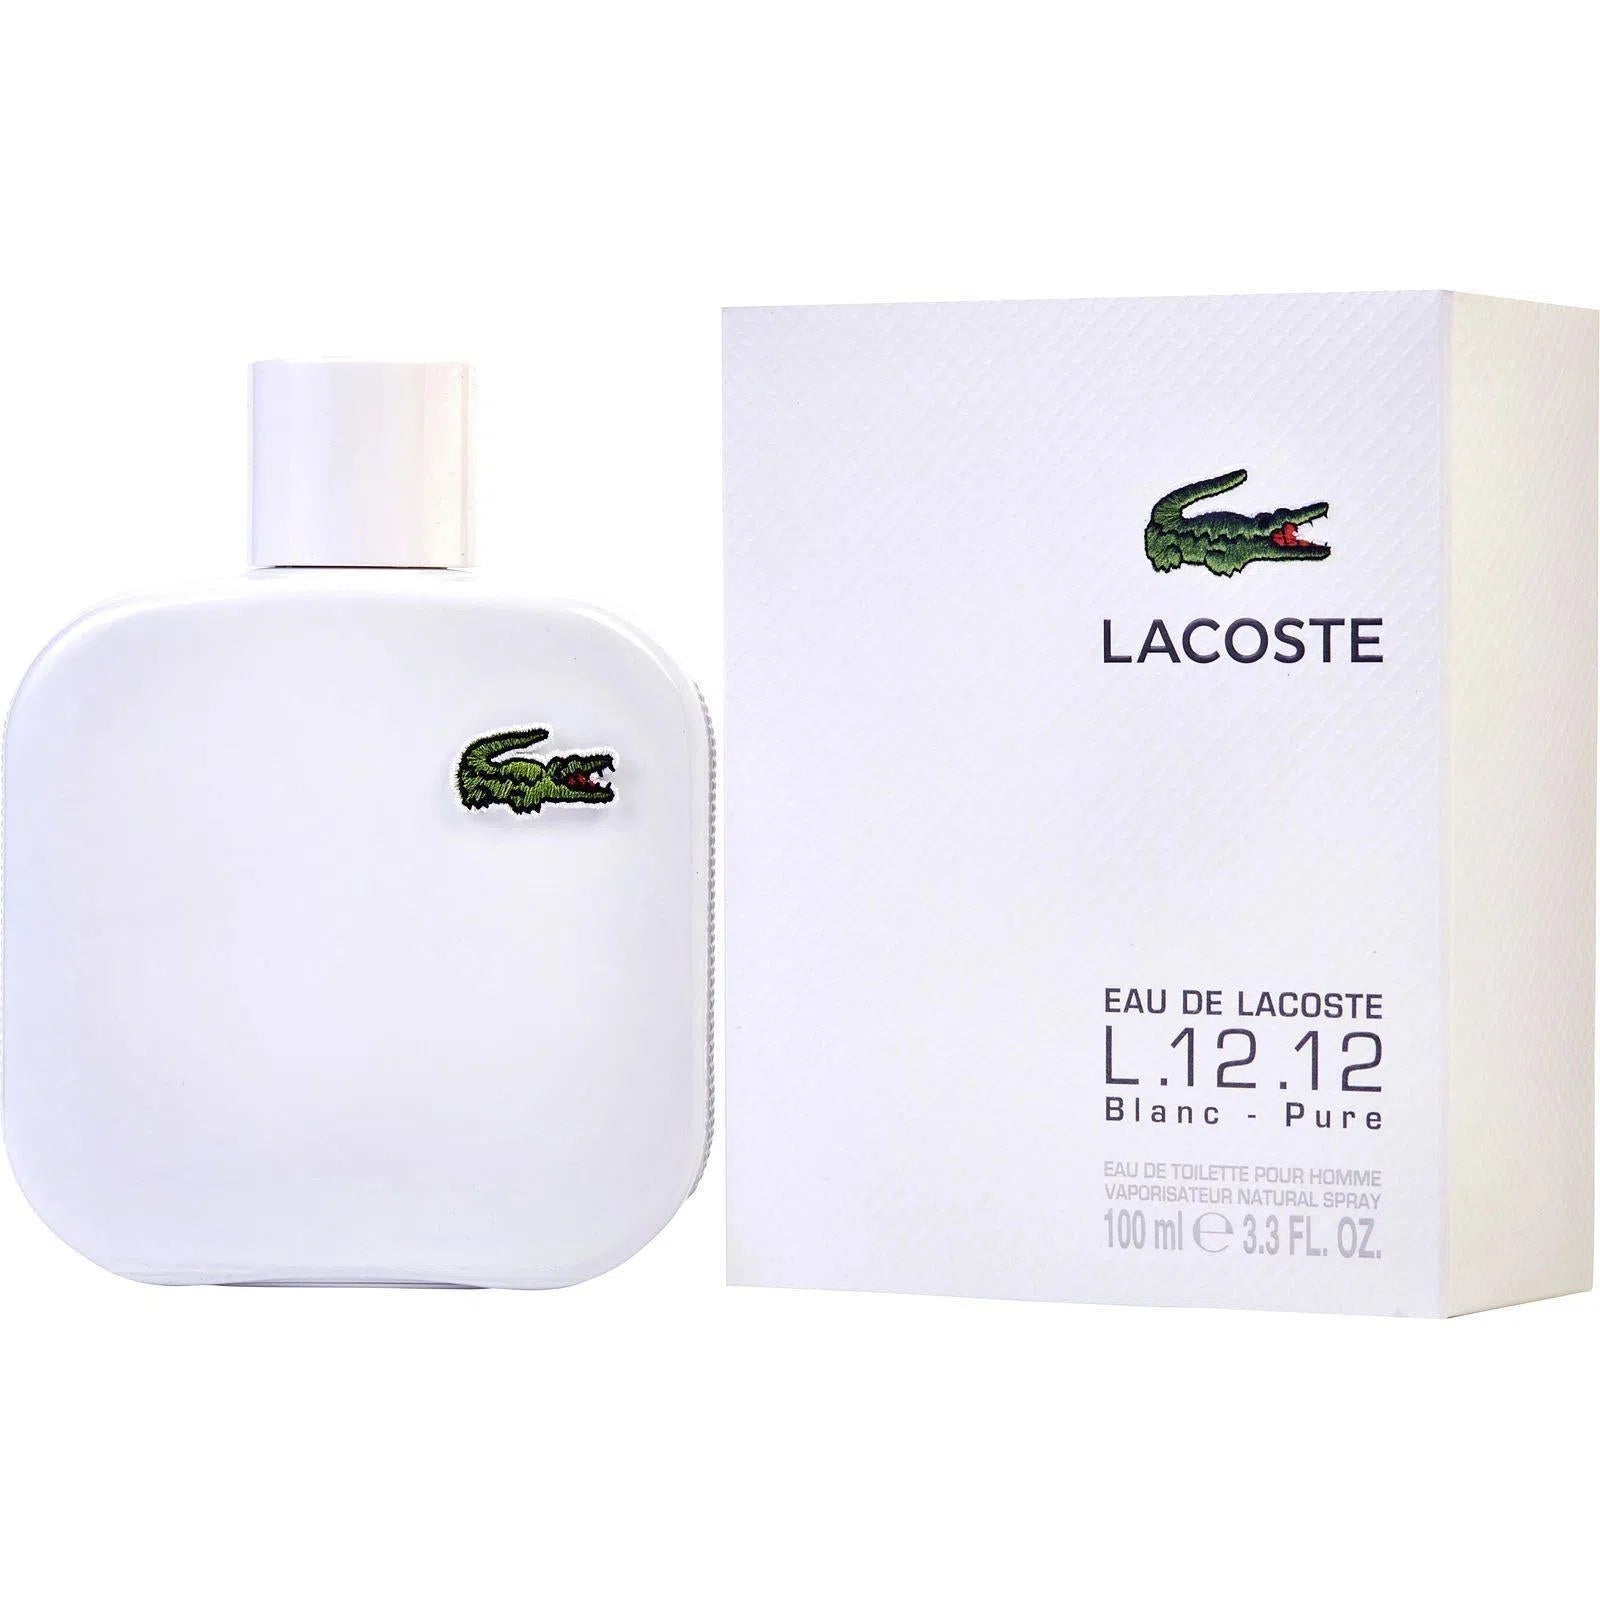 Perfume Lacoste L.12.12 Blanc - Pure EDT (M) / 100 ml - 737052413174- Prive Perfumes Honduras